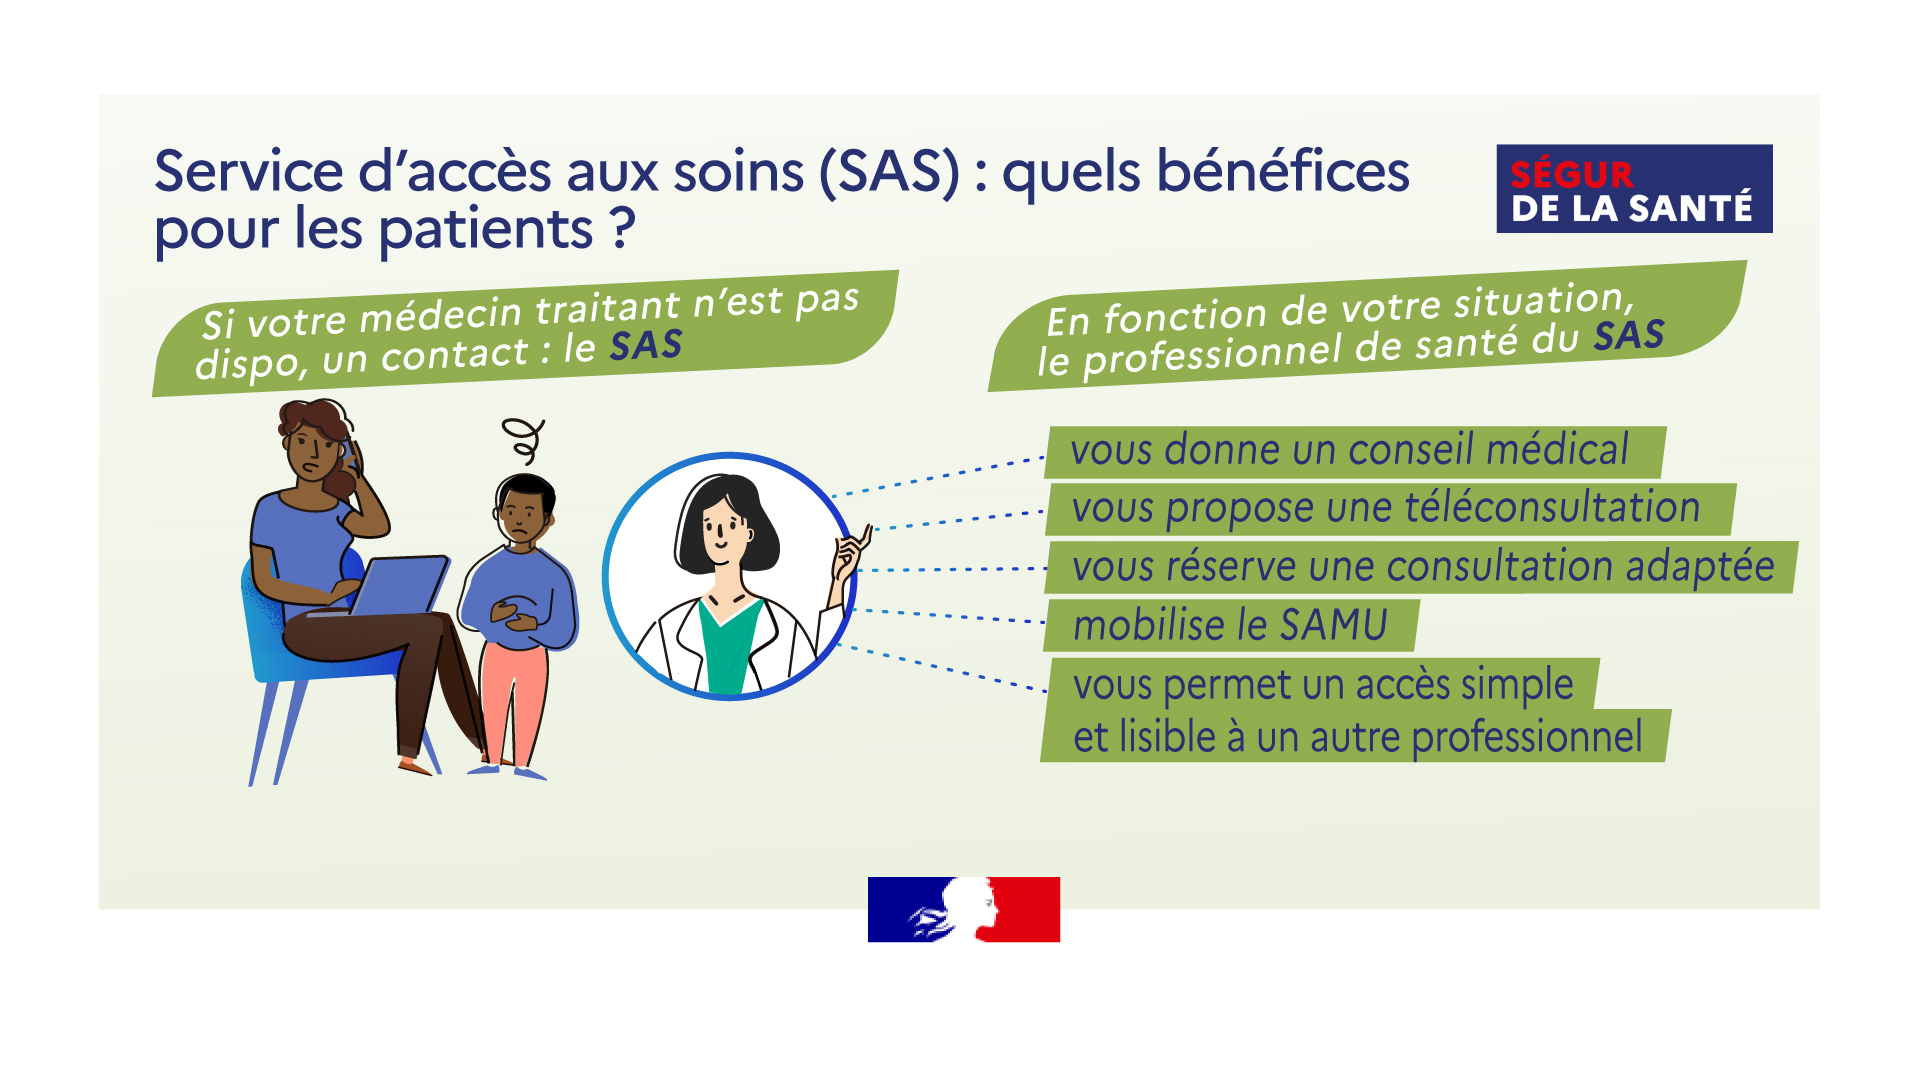 SAS : quels bénéfices pour les patients ? - voir description détaillée ci-après